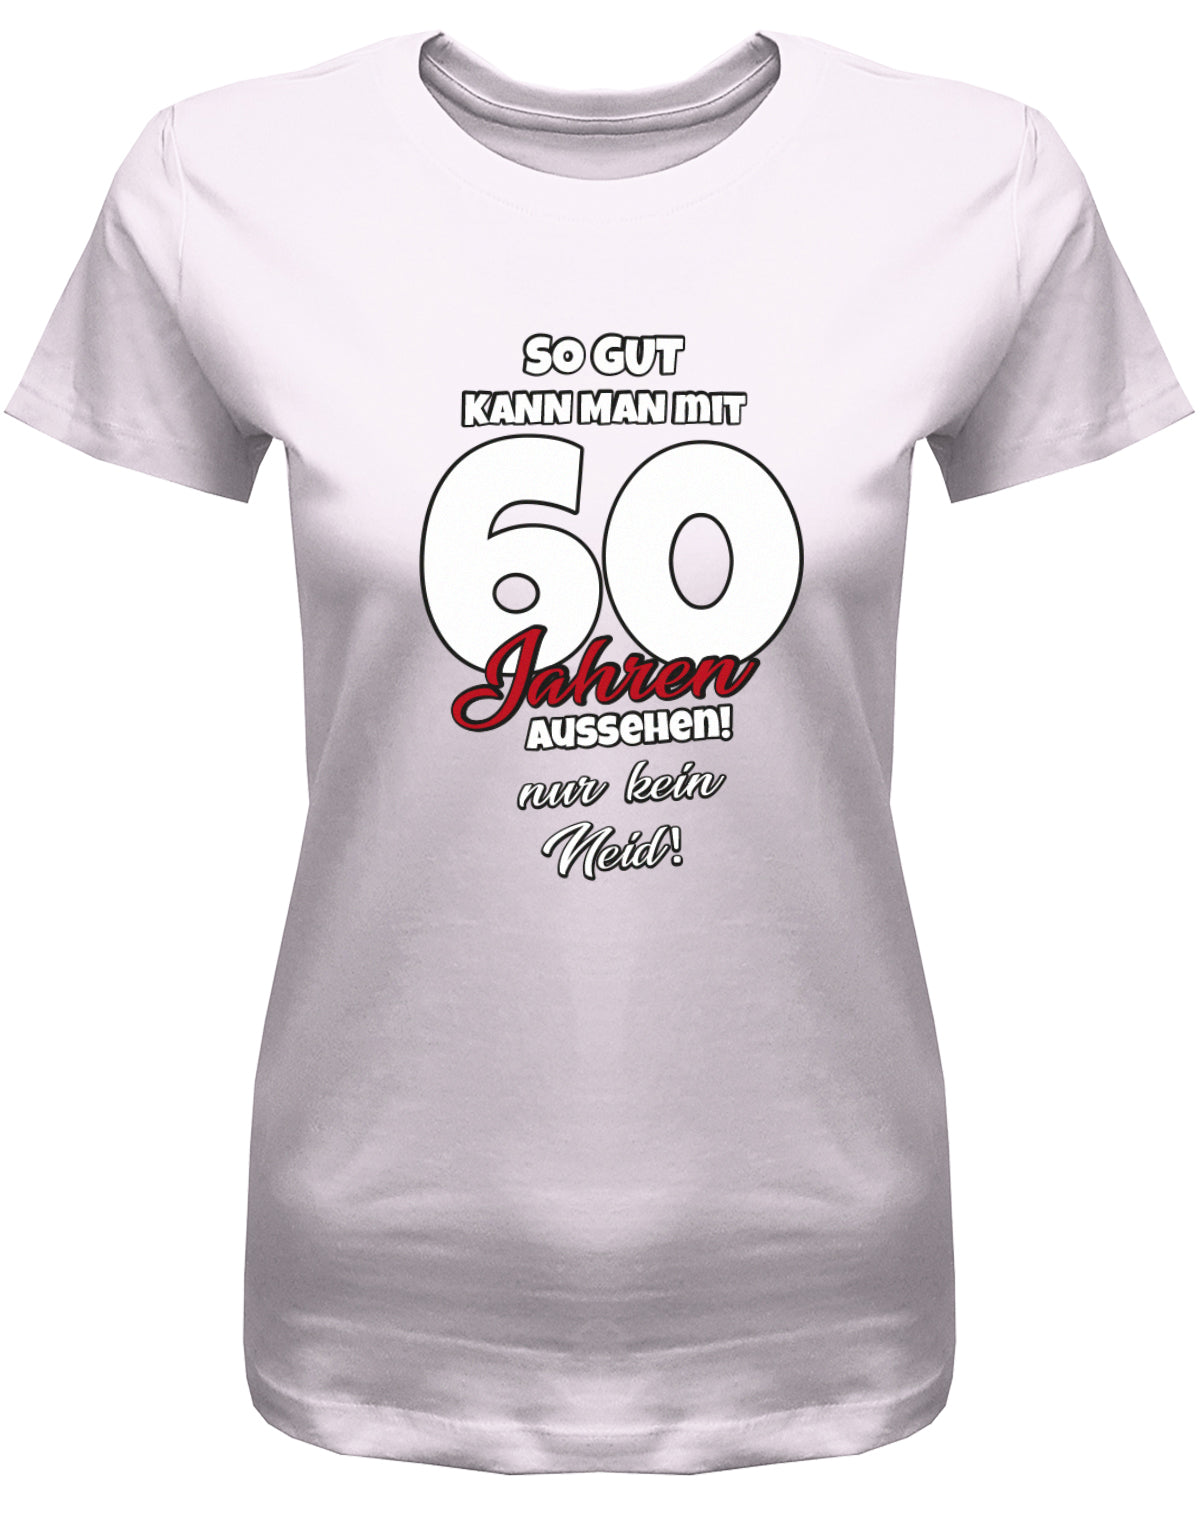 Lustiges T-Shirt zum 60 Geburtstag für die Frau Bedruckt mit So gut kann man mit 60 Jahren aussehen! Nur kein Neid! Rosa